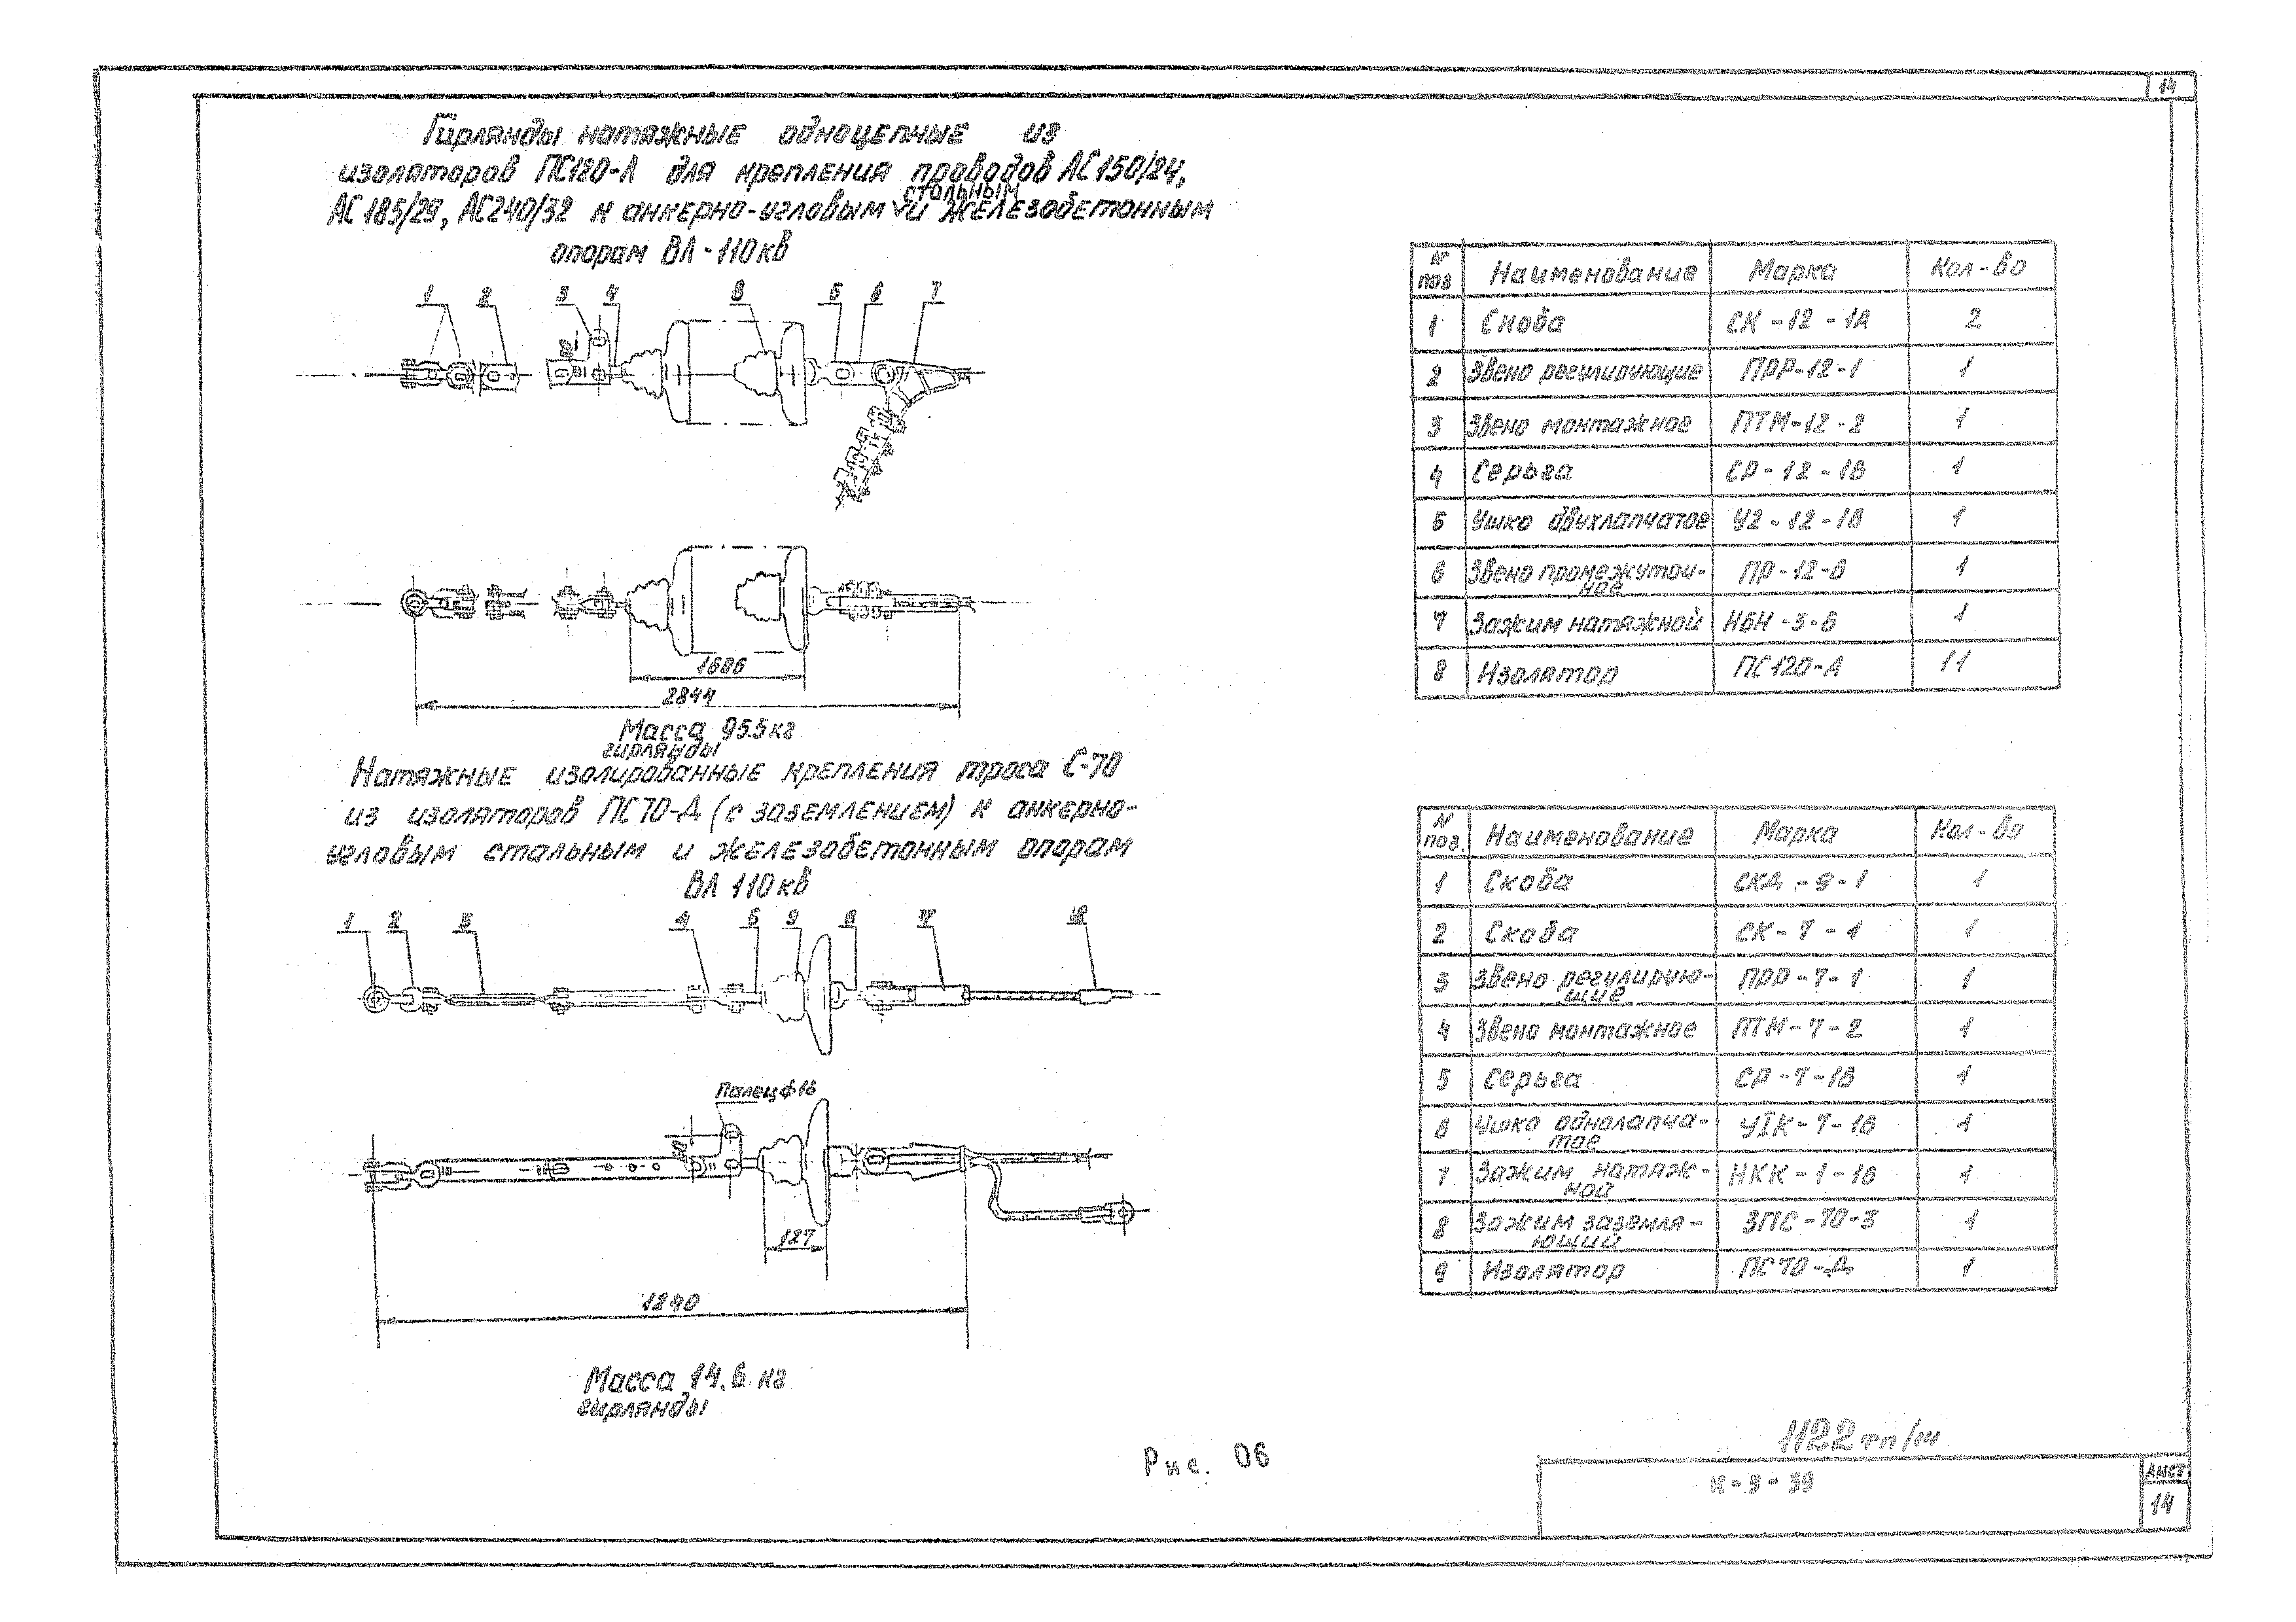 Технологическая карта К-5-39